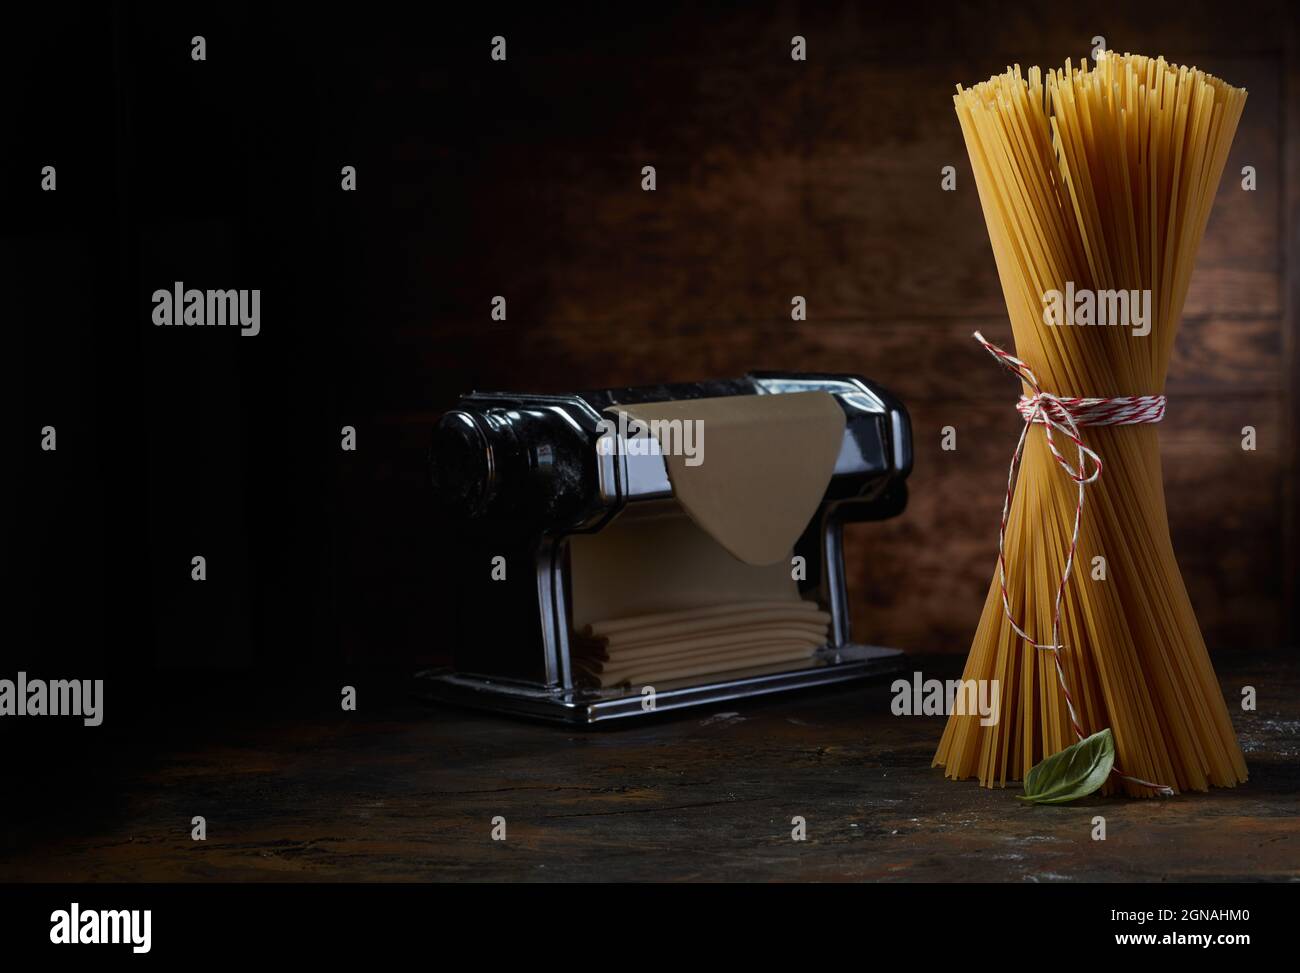 Mazzetto di spaghetti crudi su tavola in legno con macchina per pasta metallica e pasticceria fresca in studio scuro Foto Stock